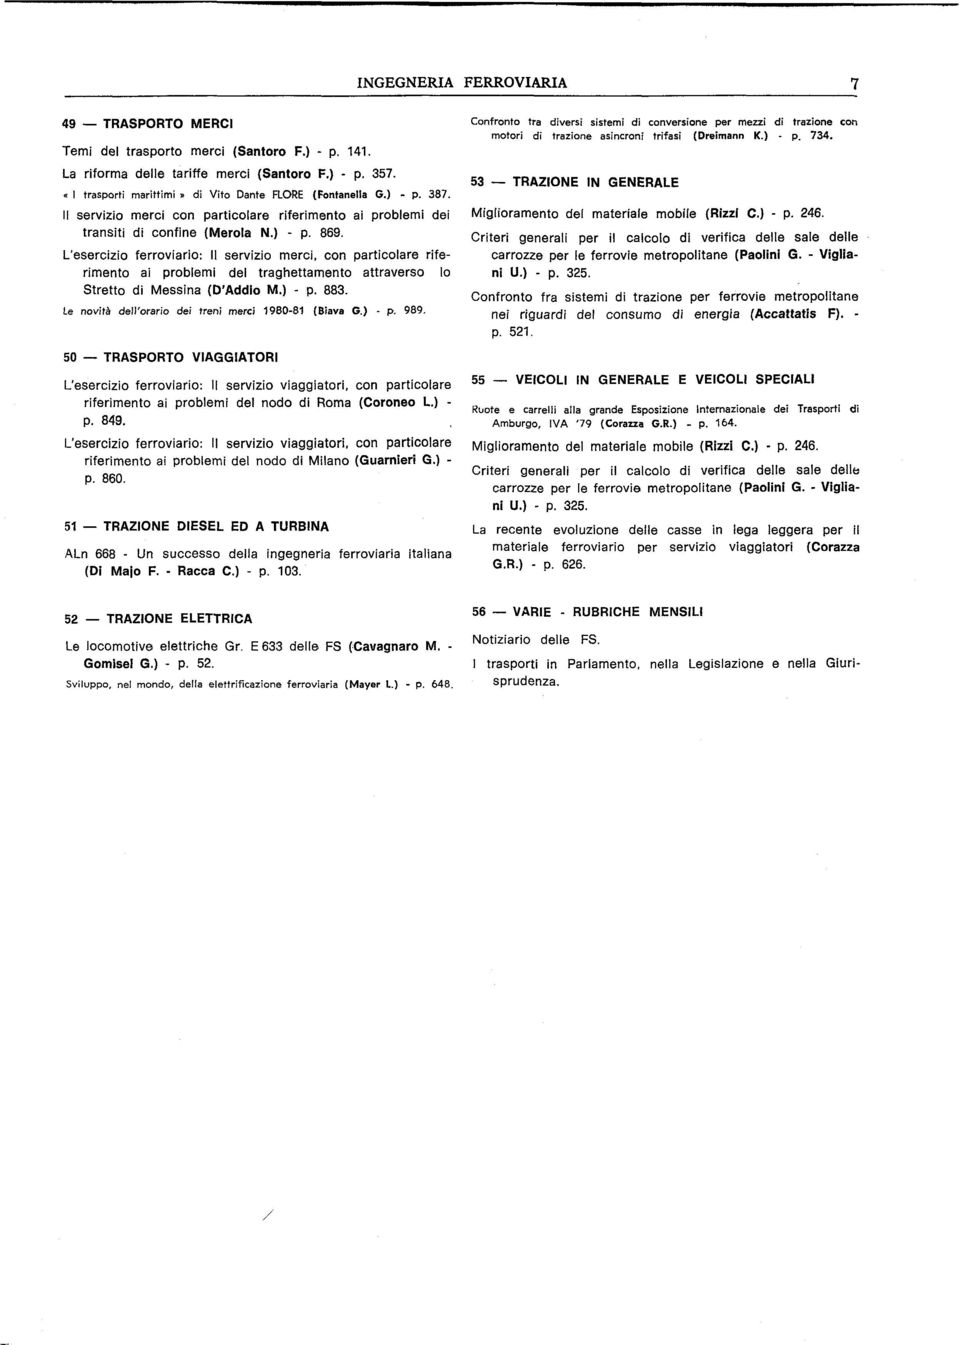 L'esercizio ferroviario: Il servizio merci, con particolare riferimento ai problemi del traghettamento attraverso lo Stretto di Messina (D'Addio M.) - p. 883.